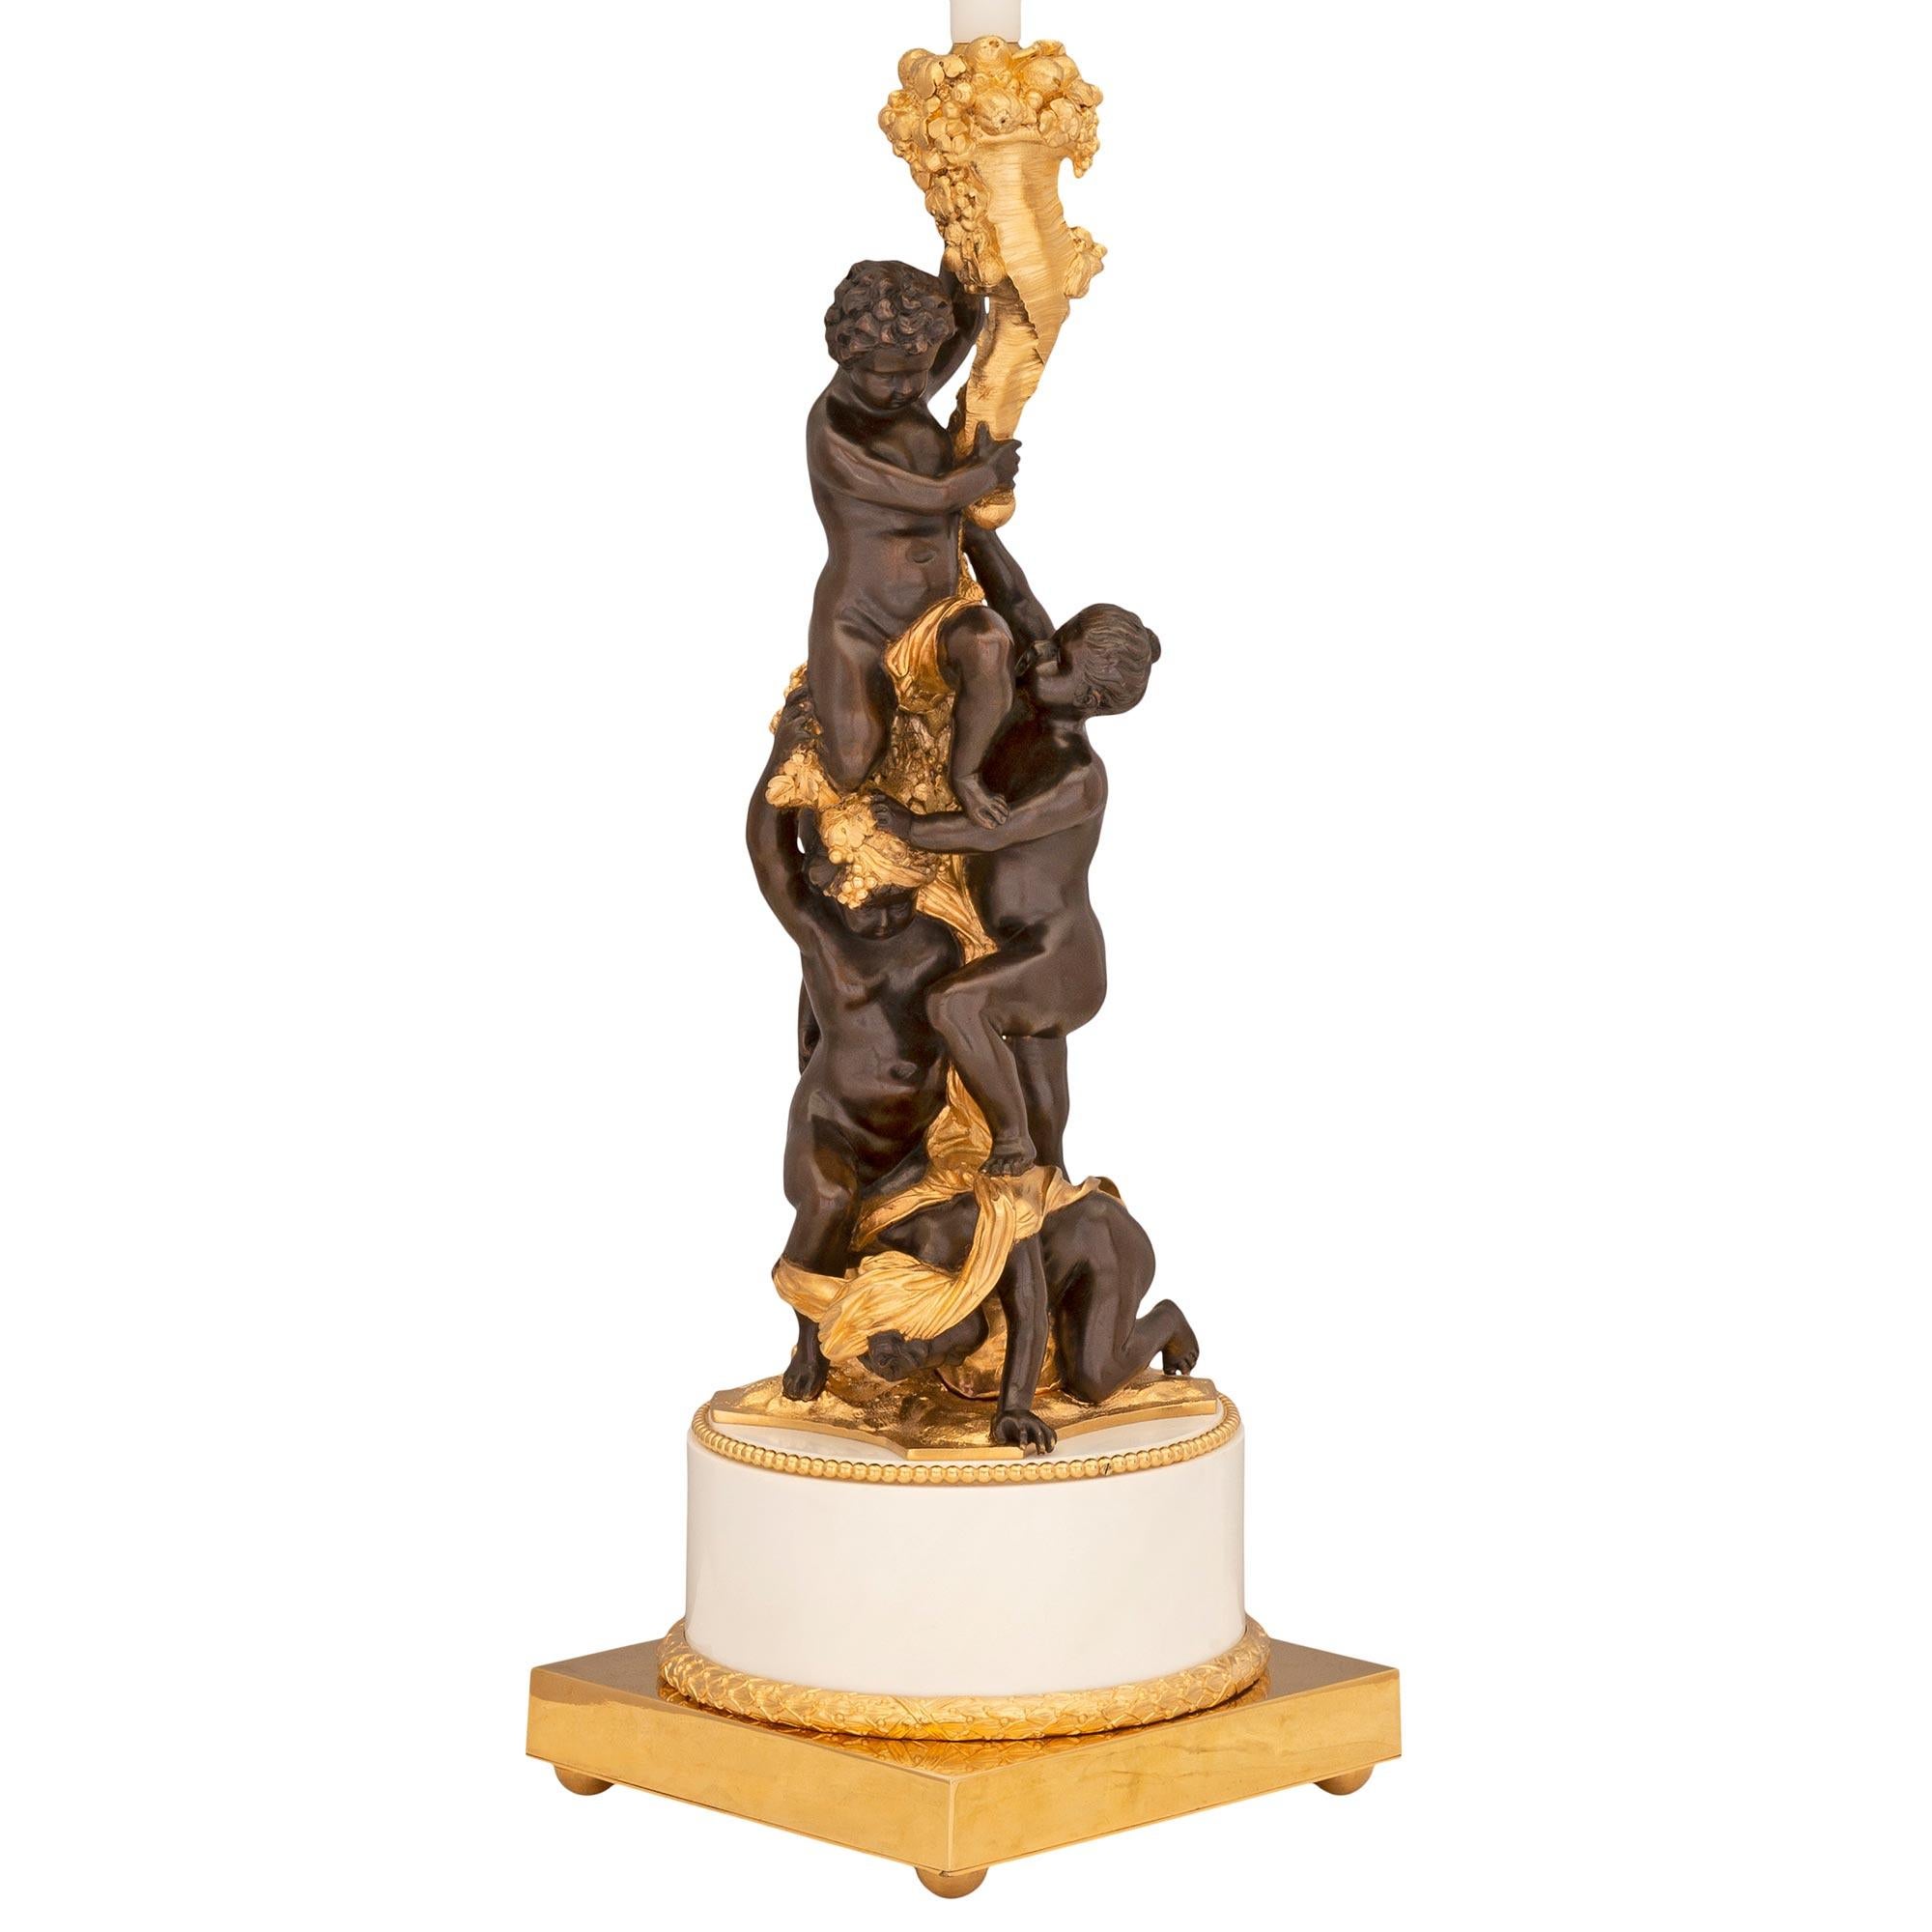 Eine schöne, qualitativ hochwertige französische Lampe aus dem 19. Jahrhundert aus patinierter Bronze, Ormolu und weißem Carrara-Marmor, die von Caldwell of New York vertrieben wird. Die Lampe steht auf einem quadratischen Ormolu-Sockel mit